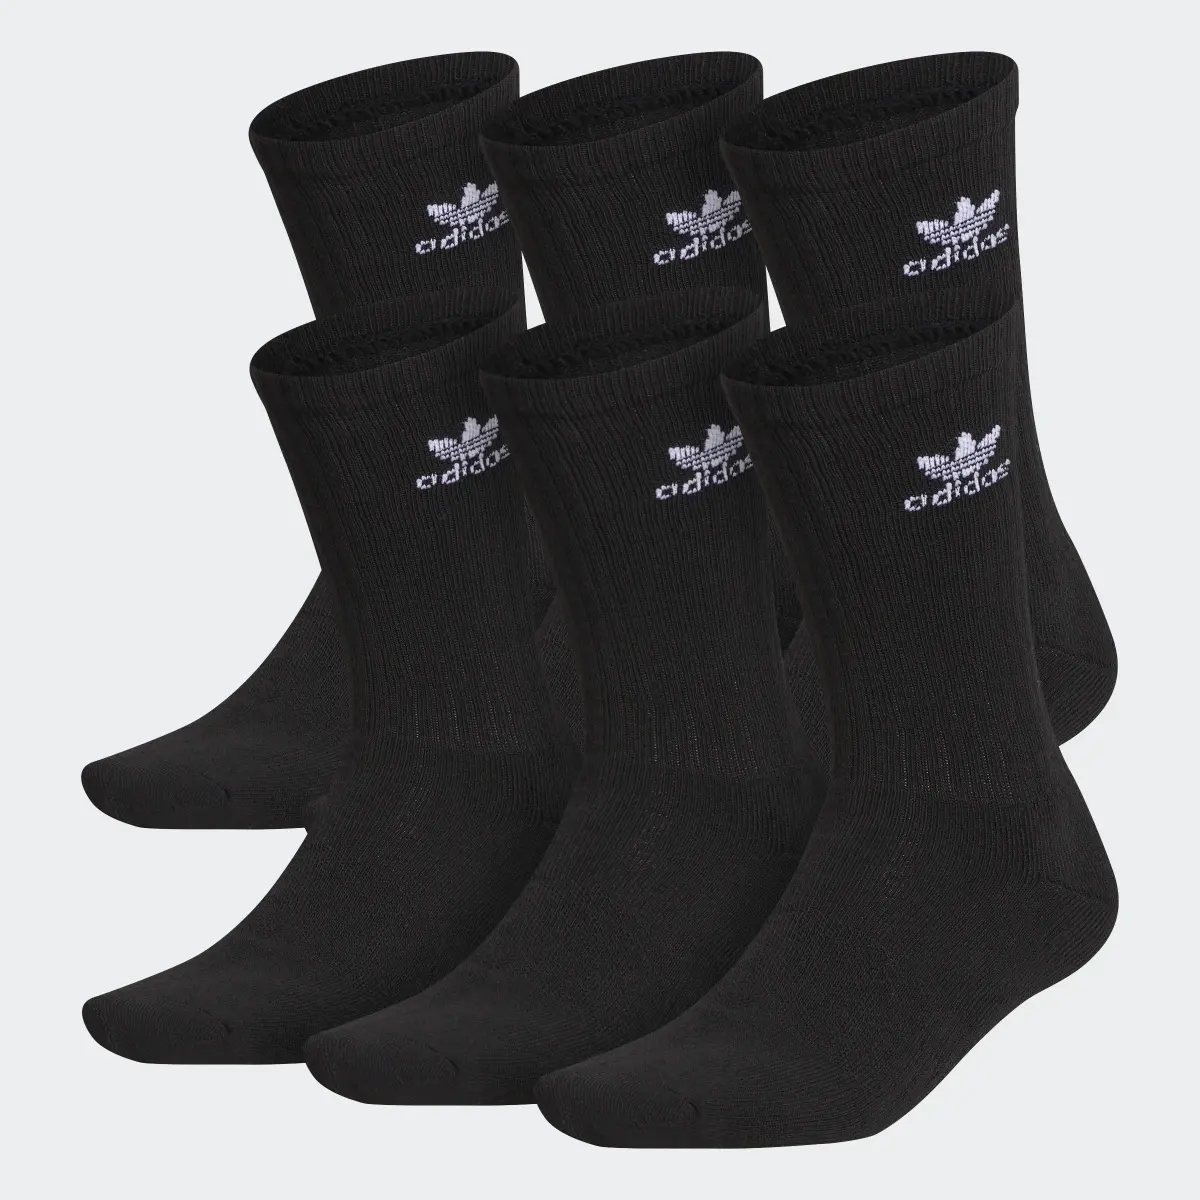 Adidas Trefoil Crew Socks 6 Pairs. 2